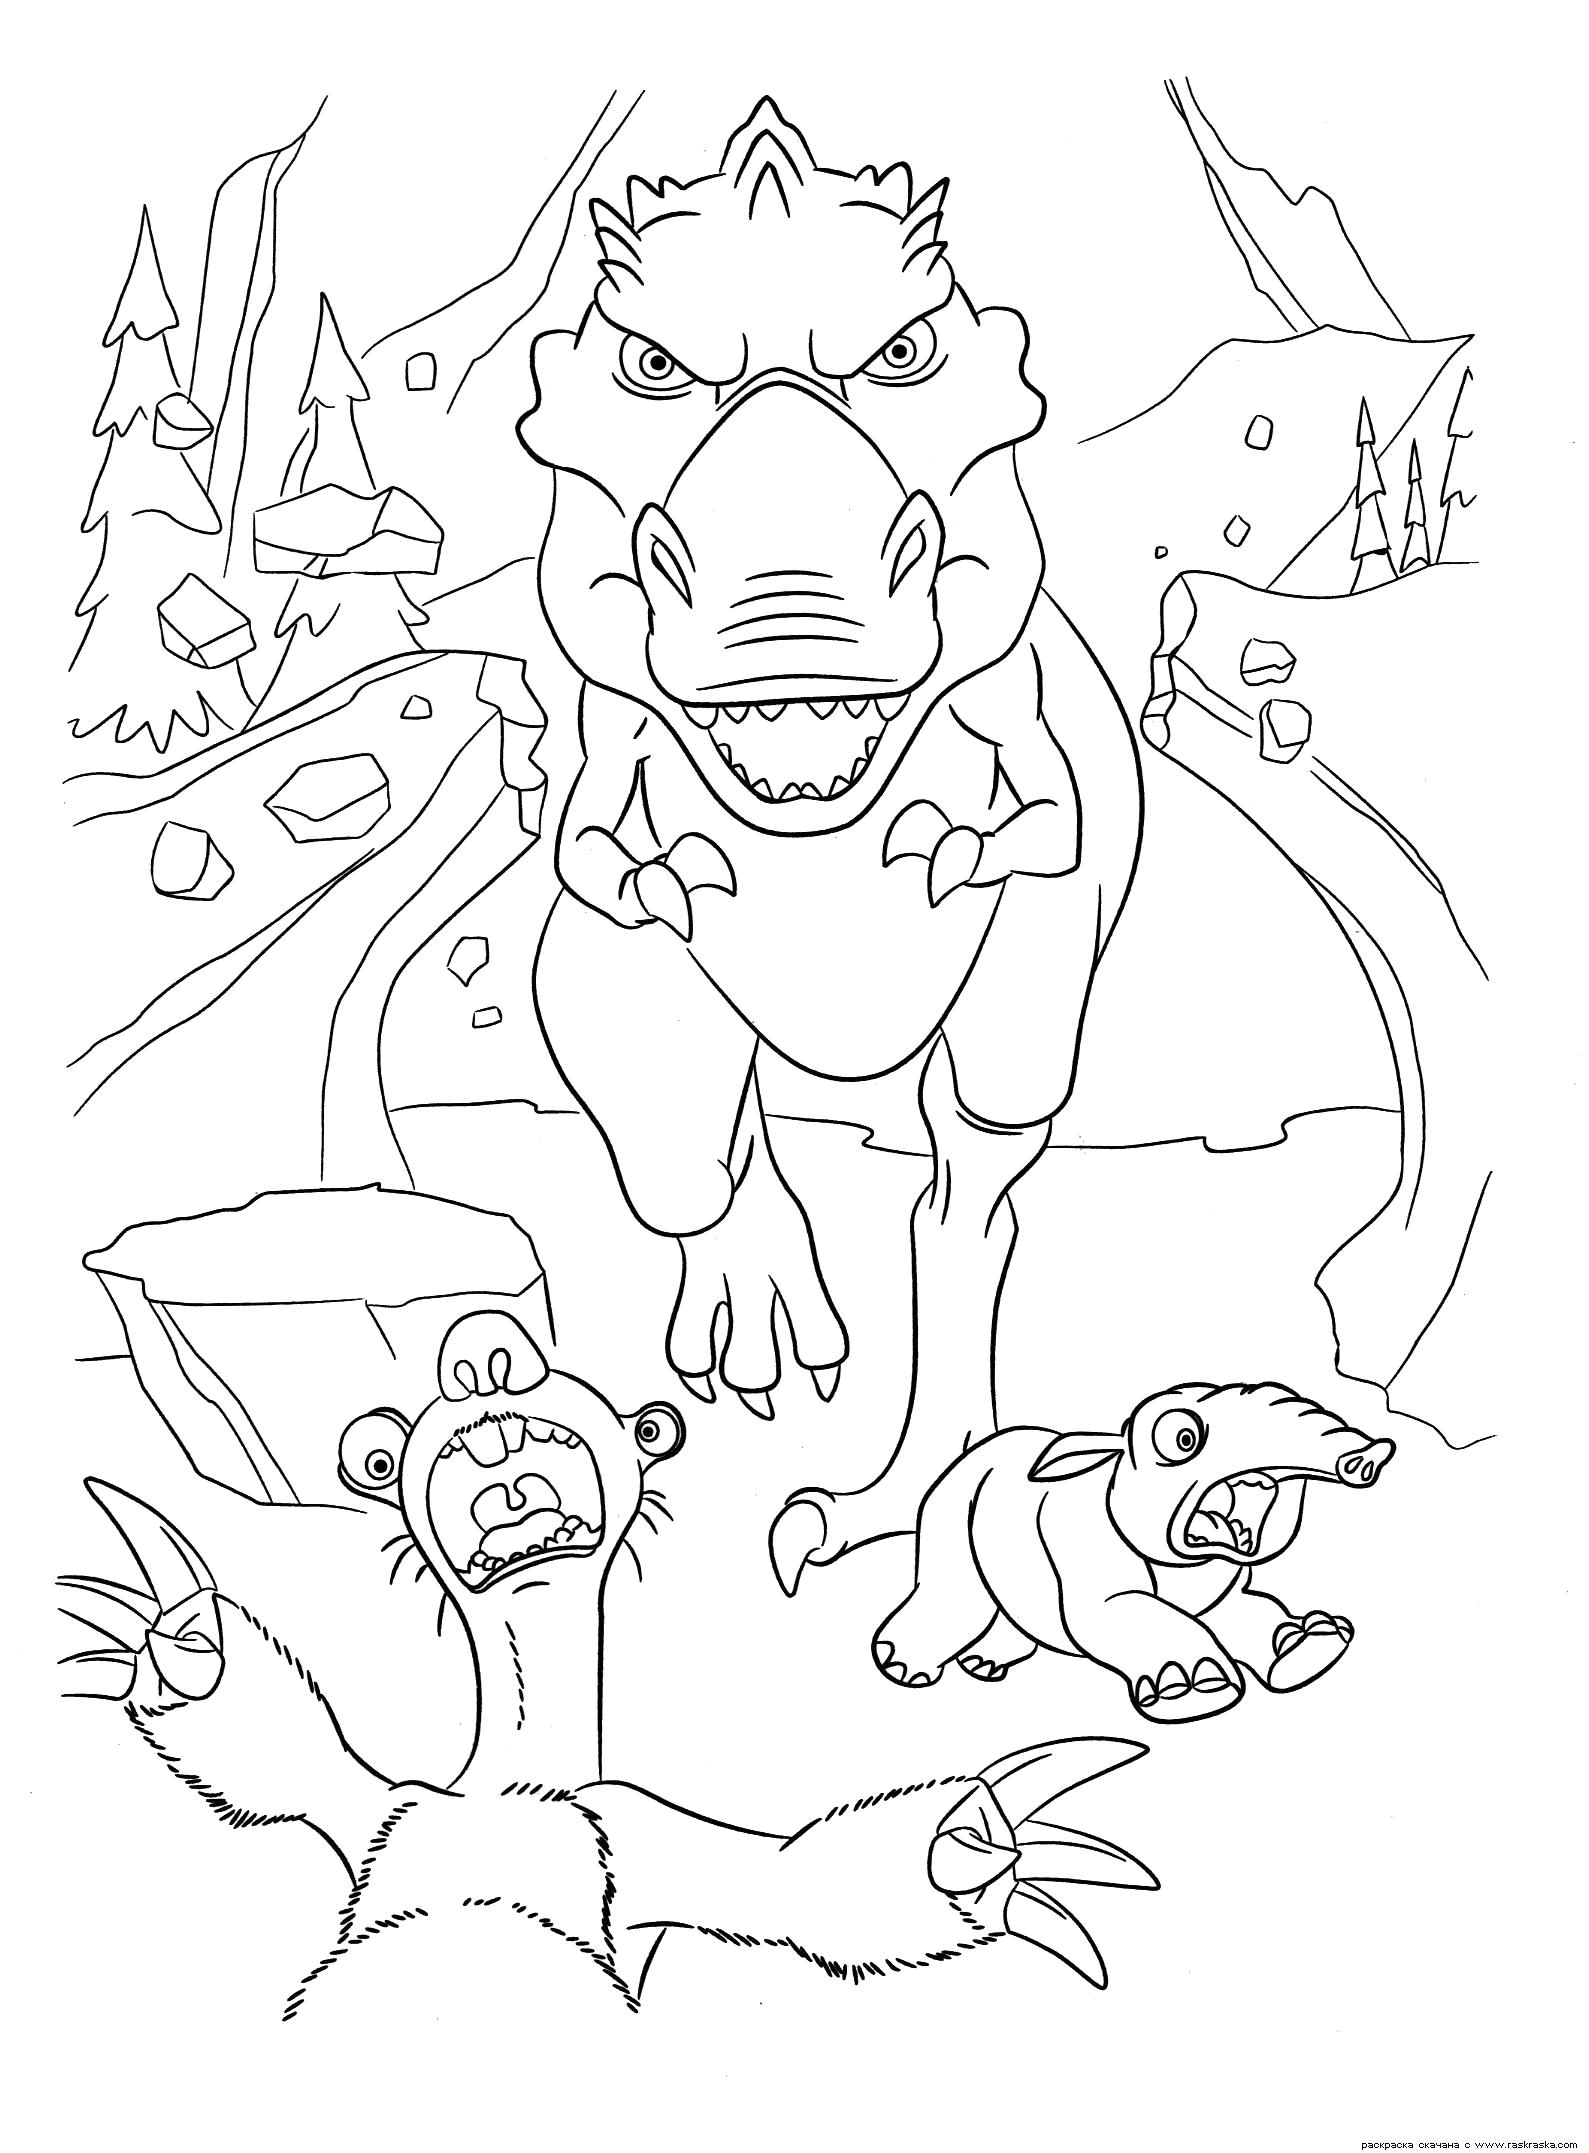 Название: Раскраска Раскраска Сид в панике. Раскраска Ленивец Сид и динозавр из мультфильма Ледниковый период 3. Эра динозавров. Раскраска для детей с динозавром. Категория: динозавр. Теги: динозавр.